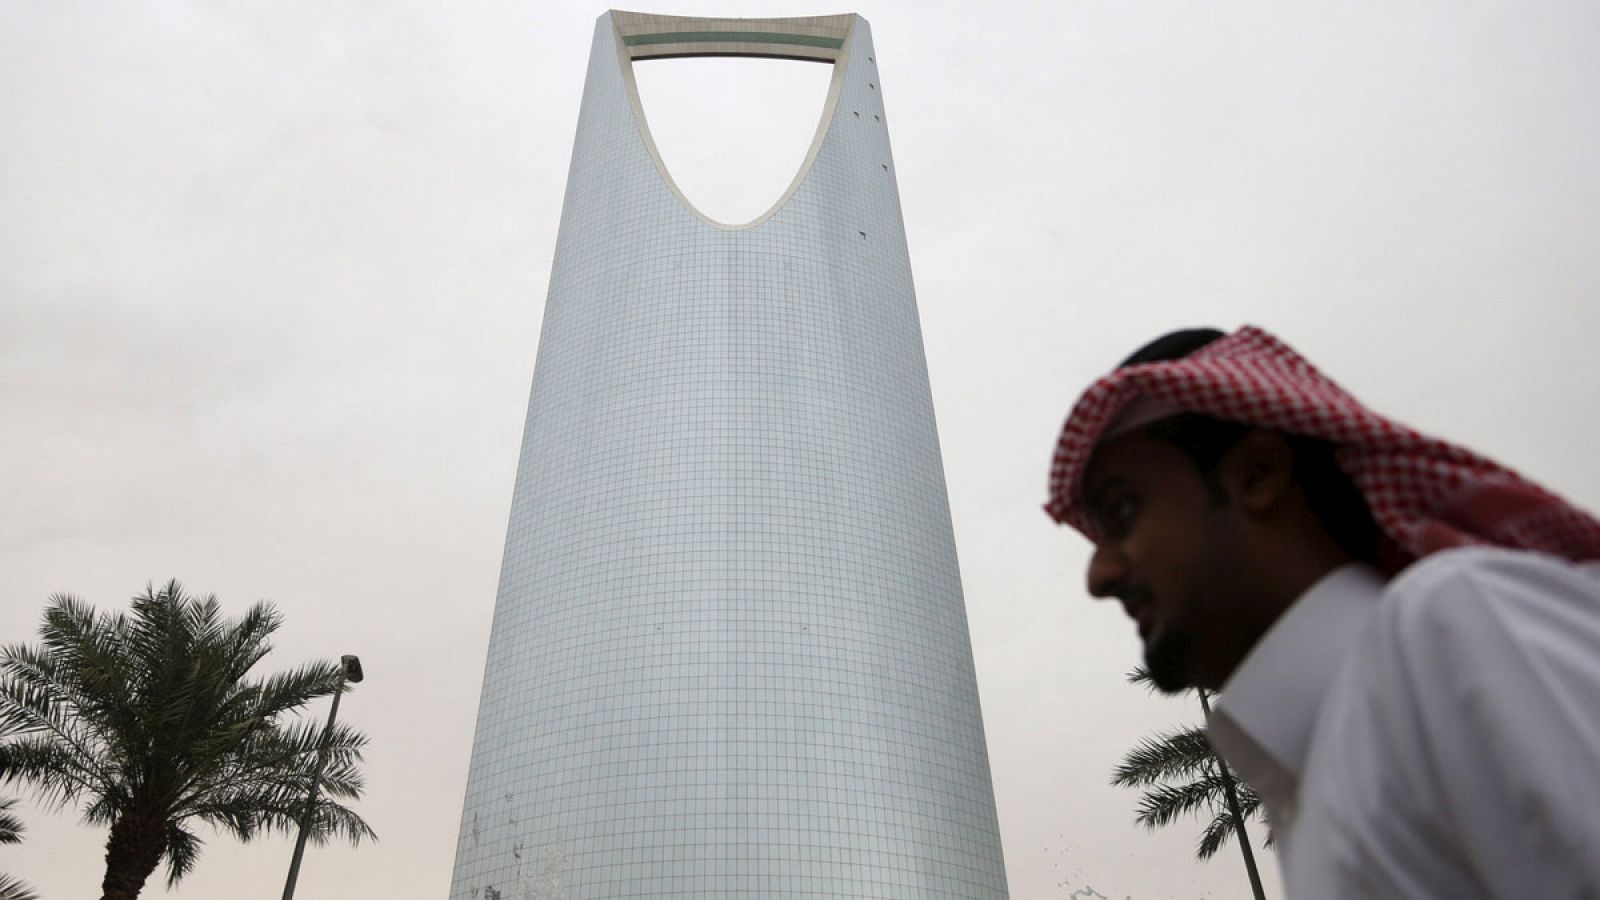 Un hombre pasea frente al Kingdom Centre Tower situado en Riad en una imagen de archivo